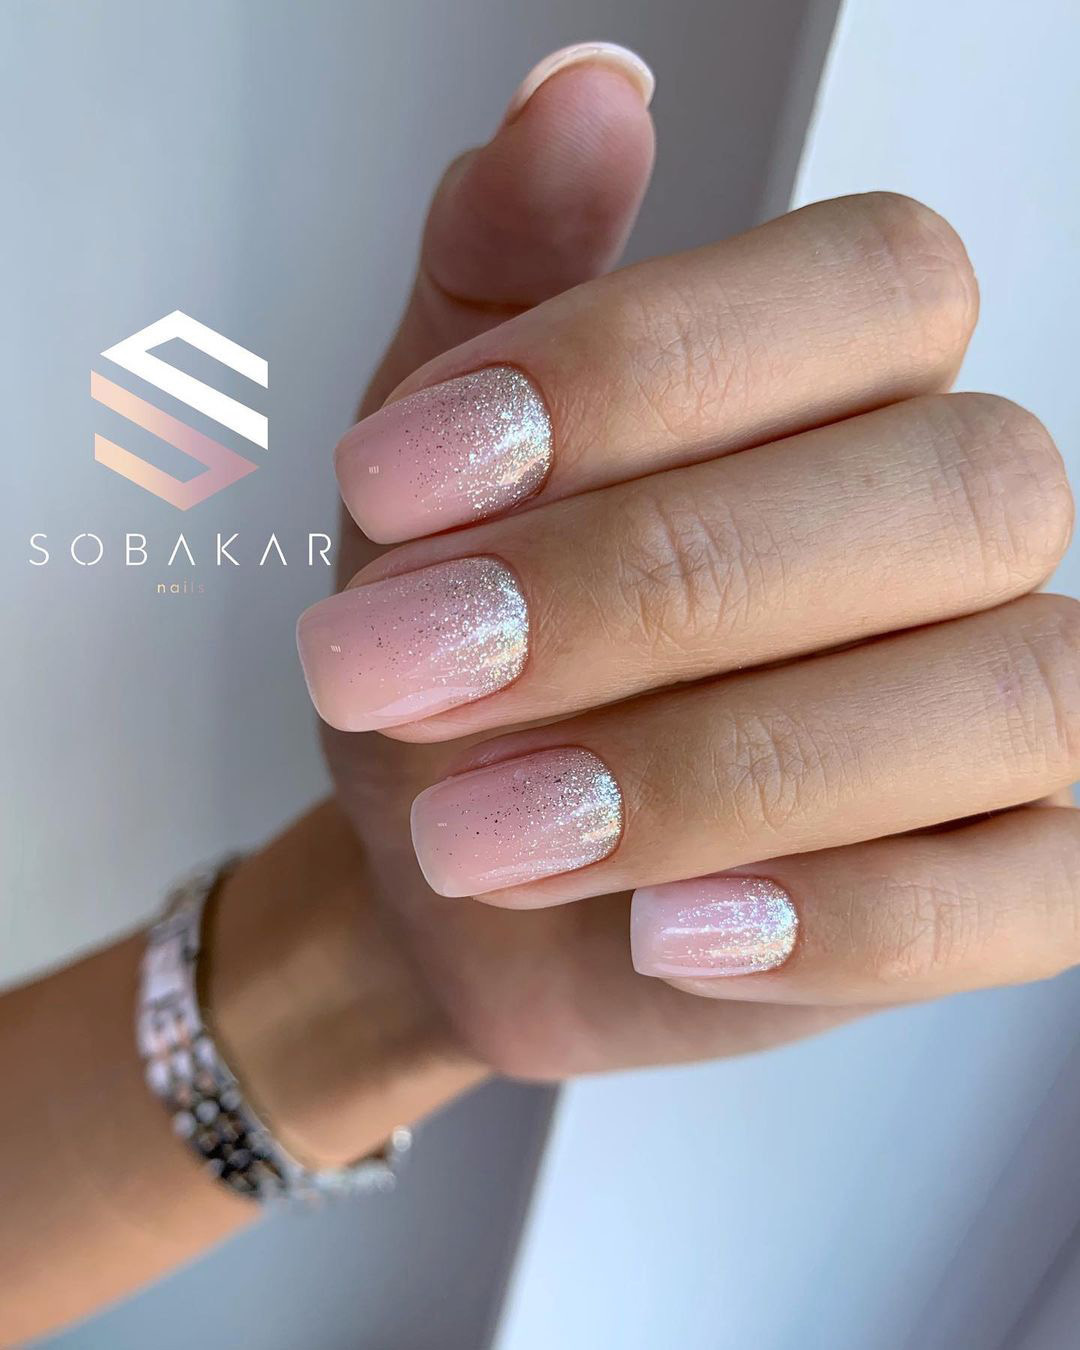 simple wedding nails natural pink and glitter sobakar_nails